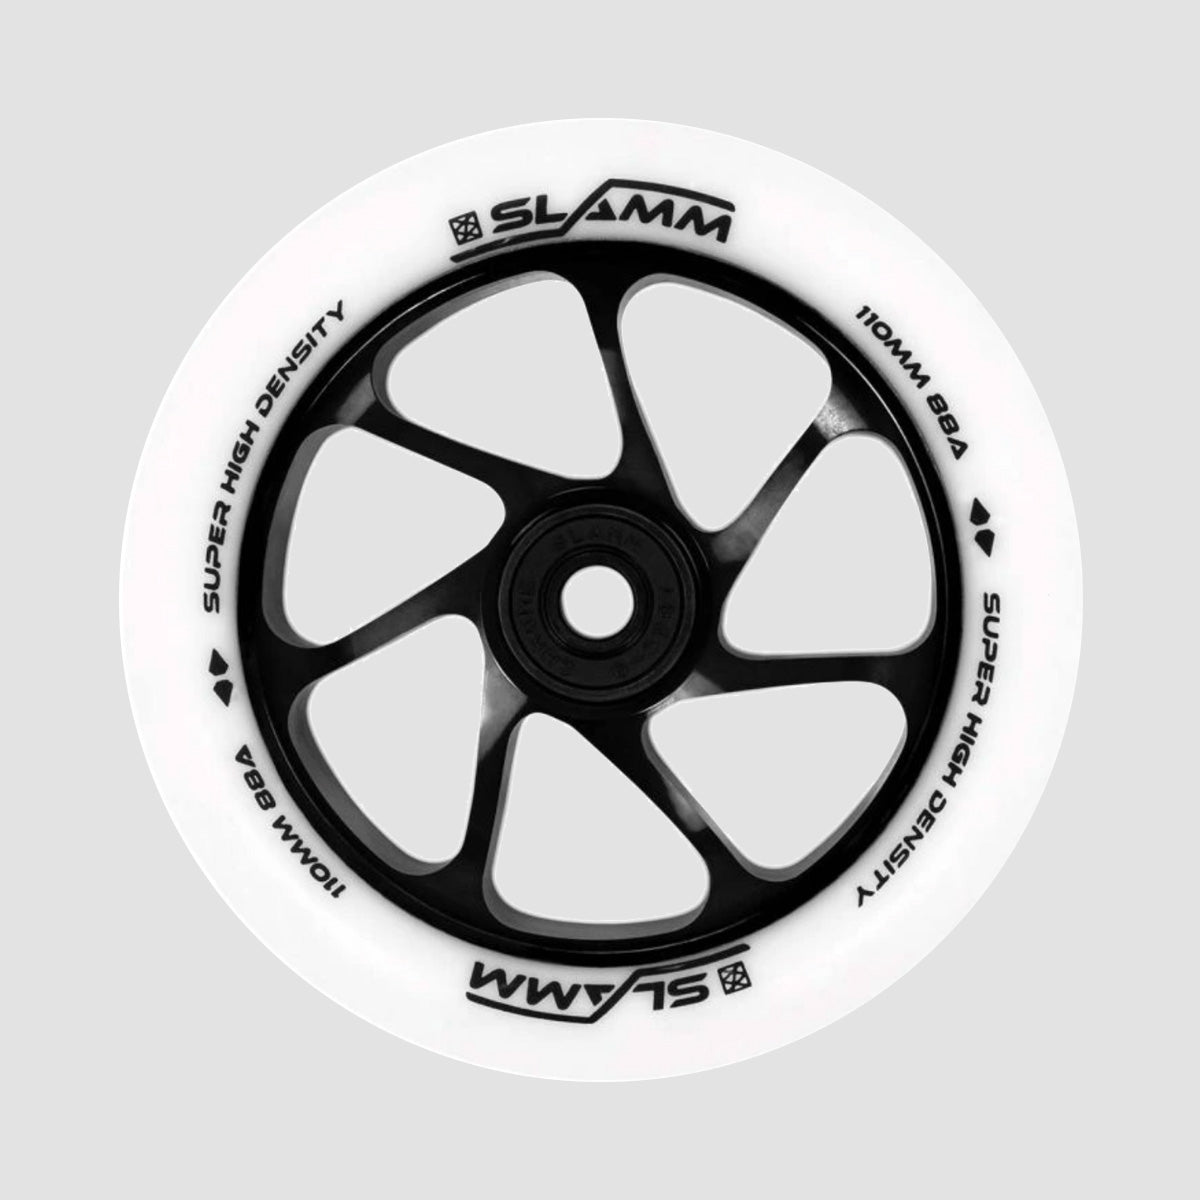 Slamm Team Wheel x1 White/Black 110mm